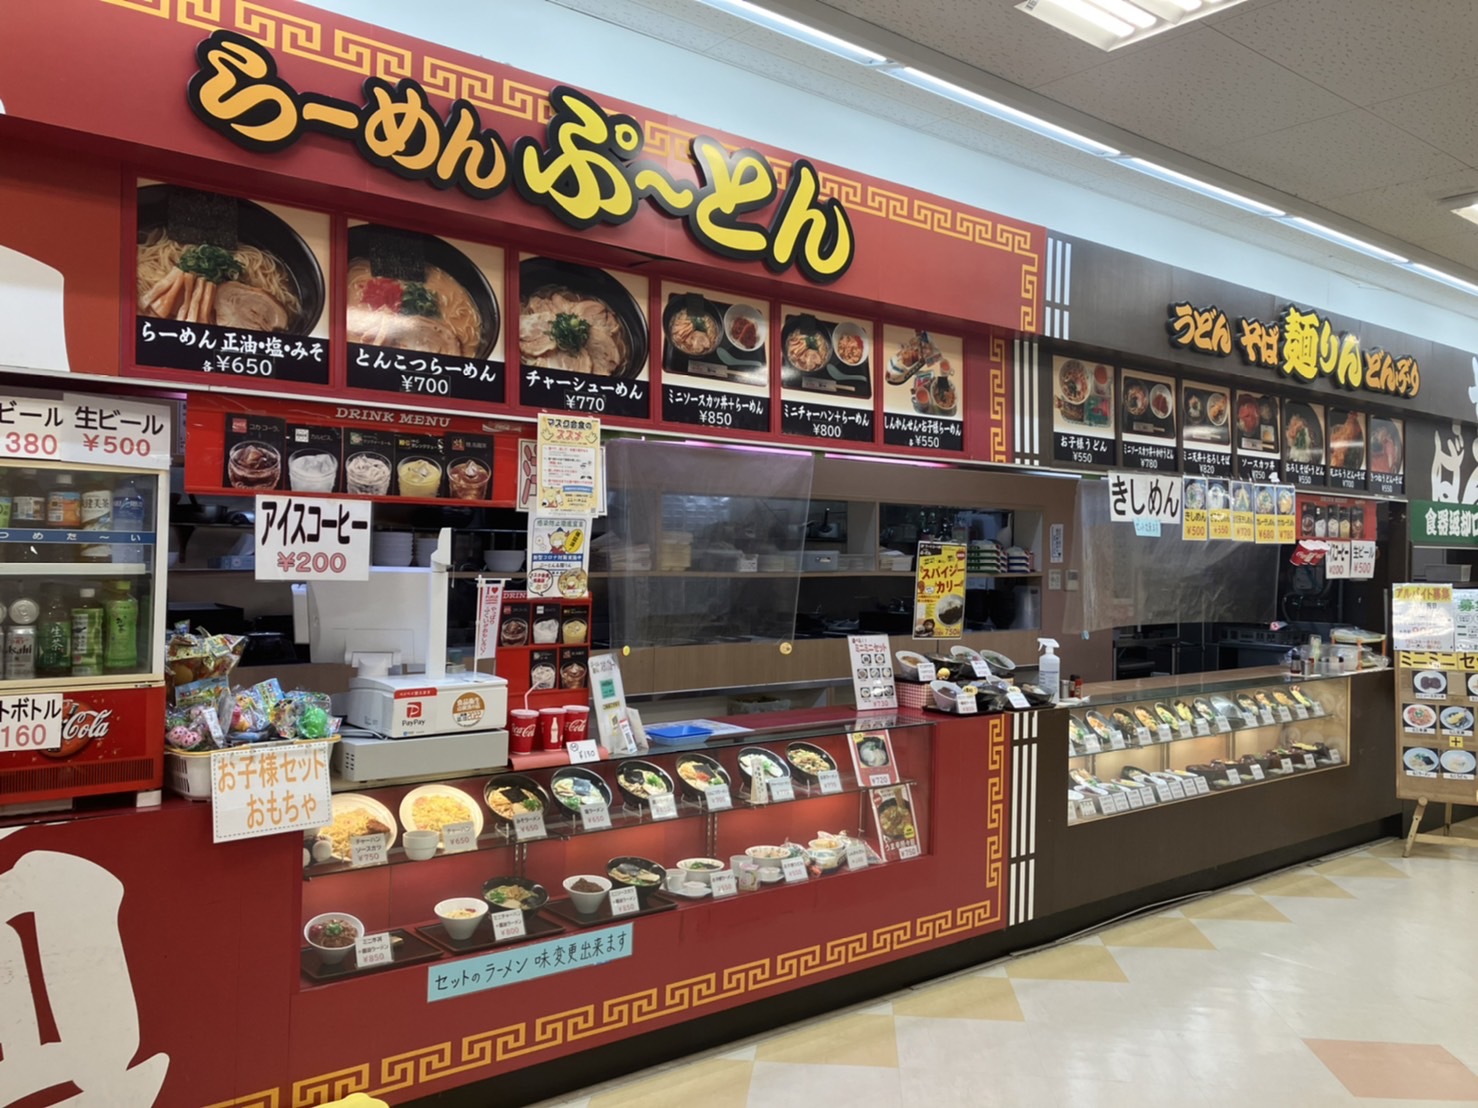 ぷーとん・麺りんベル店